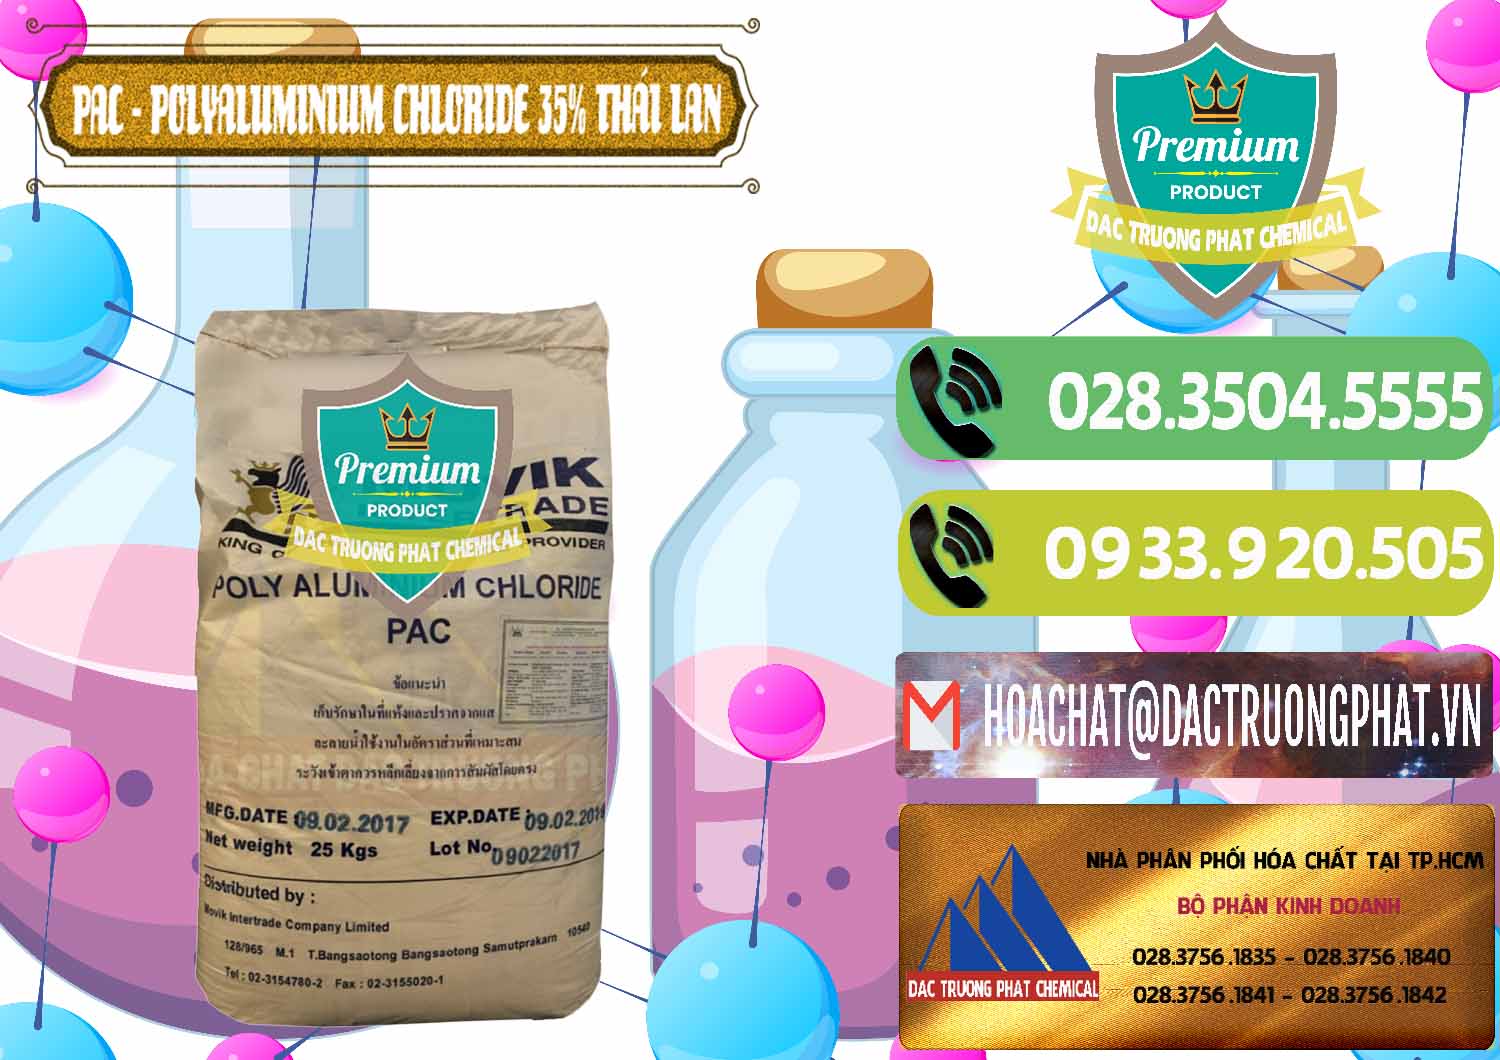 Chuyên bán & cung cấp PAC - Polyaluminium Chloride 35% Thái Lan Thailand - 0470 - Chuyên phân phối & cung ứng hóa chất tại TP.HCM - hoachatmientay.vn